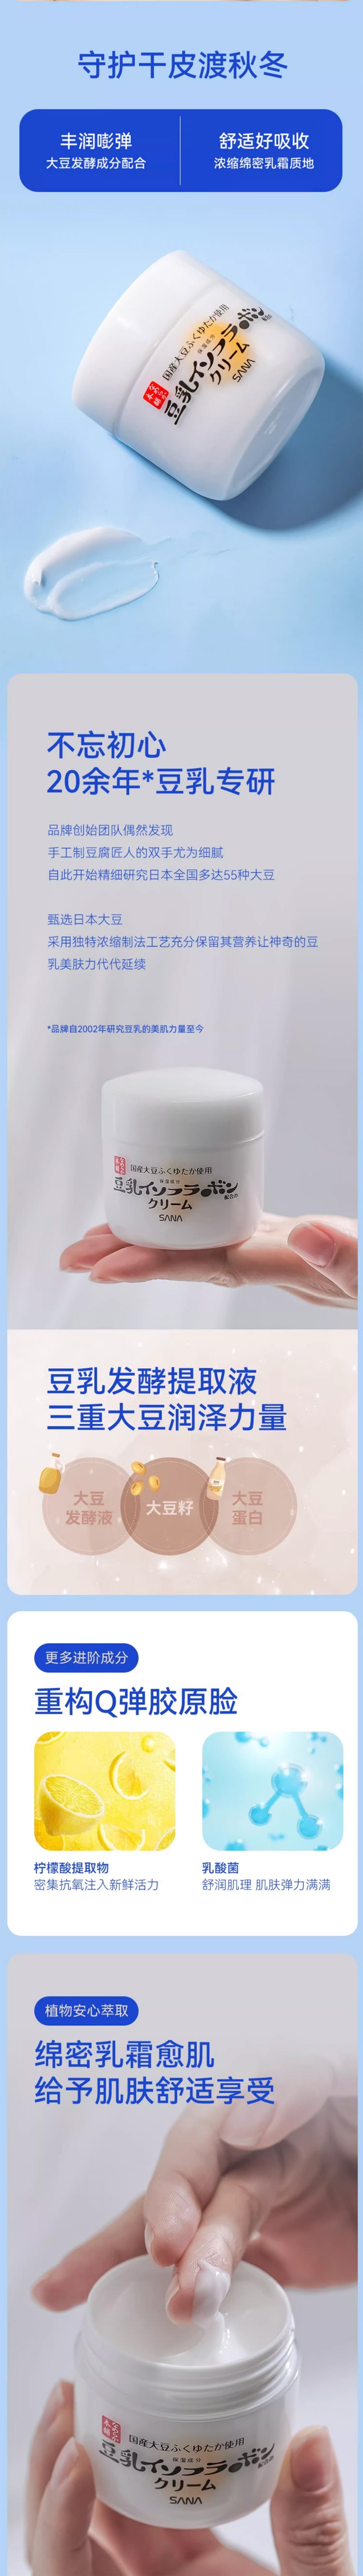 【日本直效郵件】SANA莎娜 豆乳美肌 6合1保濕多效乳霜 100g